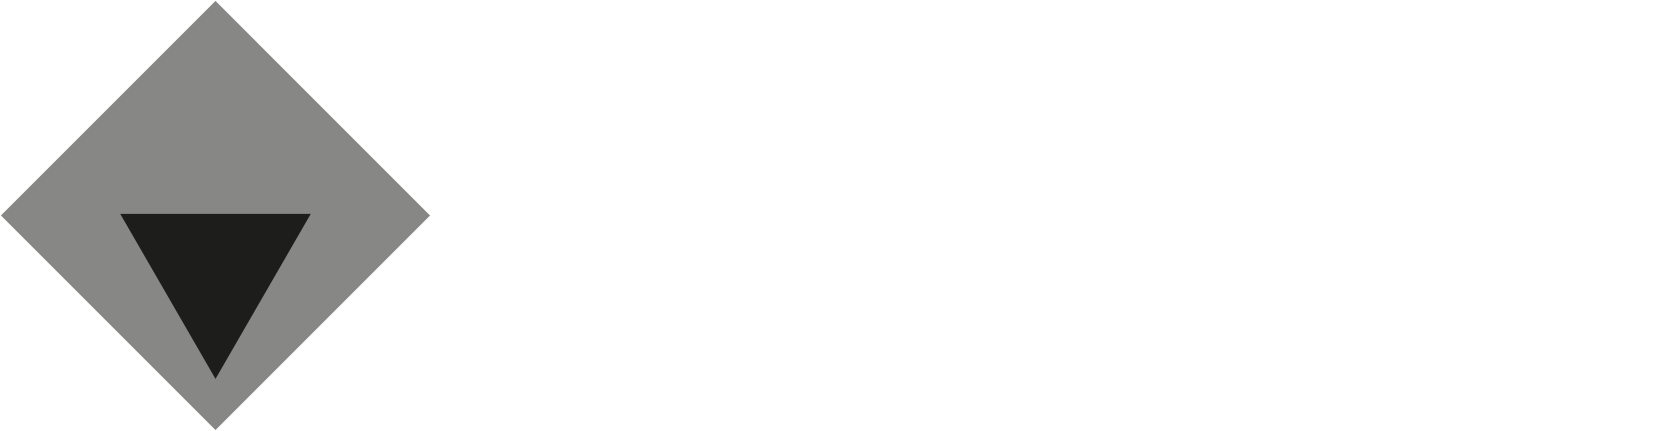 NCC Service Como